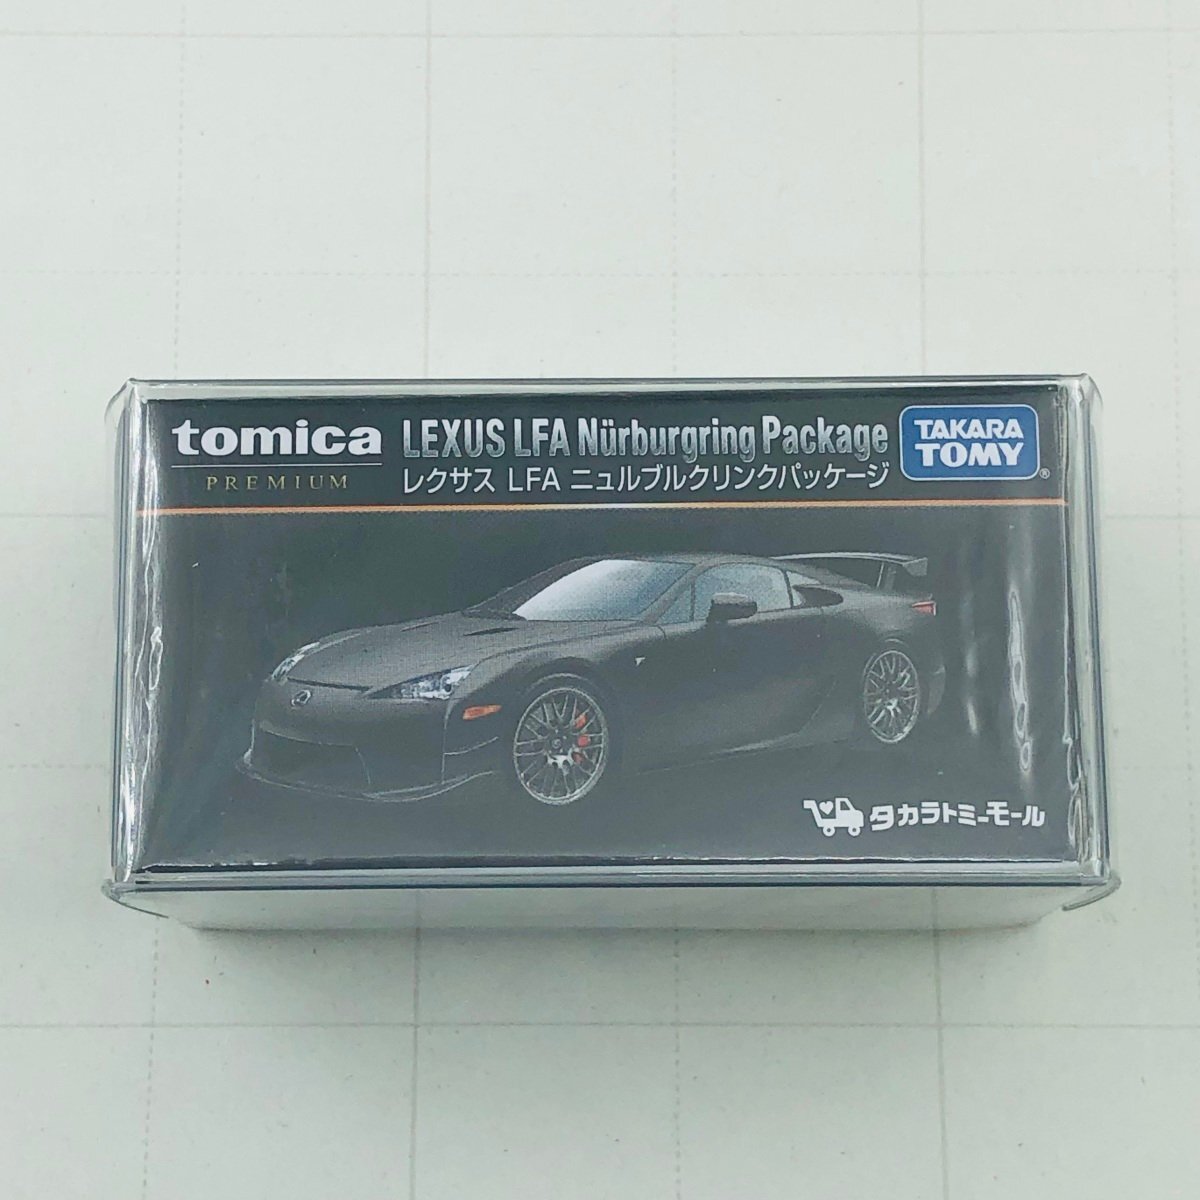 新品未開封 タカラトミー モール トミカ プレミアム レクサス LFA ニュルブルクリンパッケージ tomica PREMIUM LEXUS_画像1